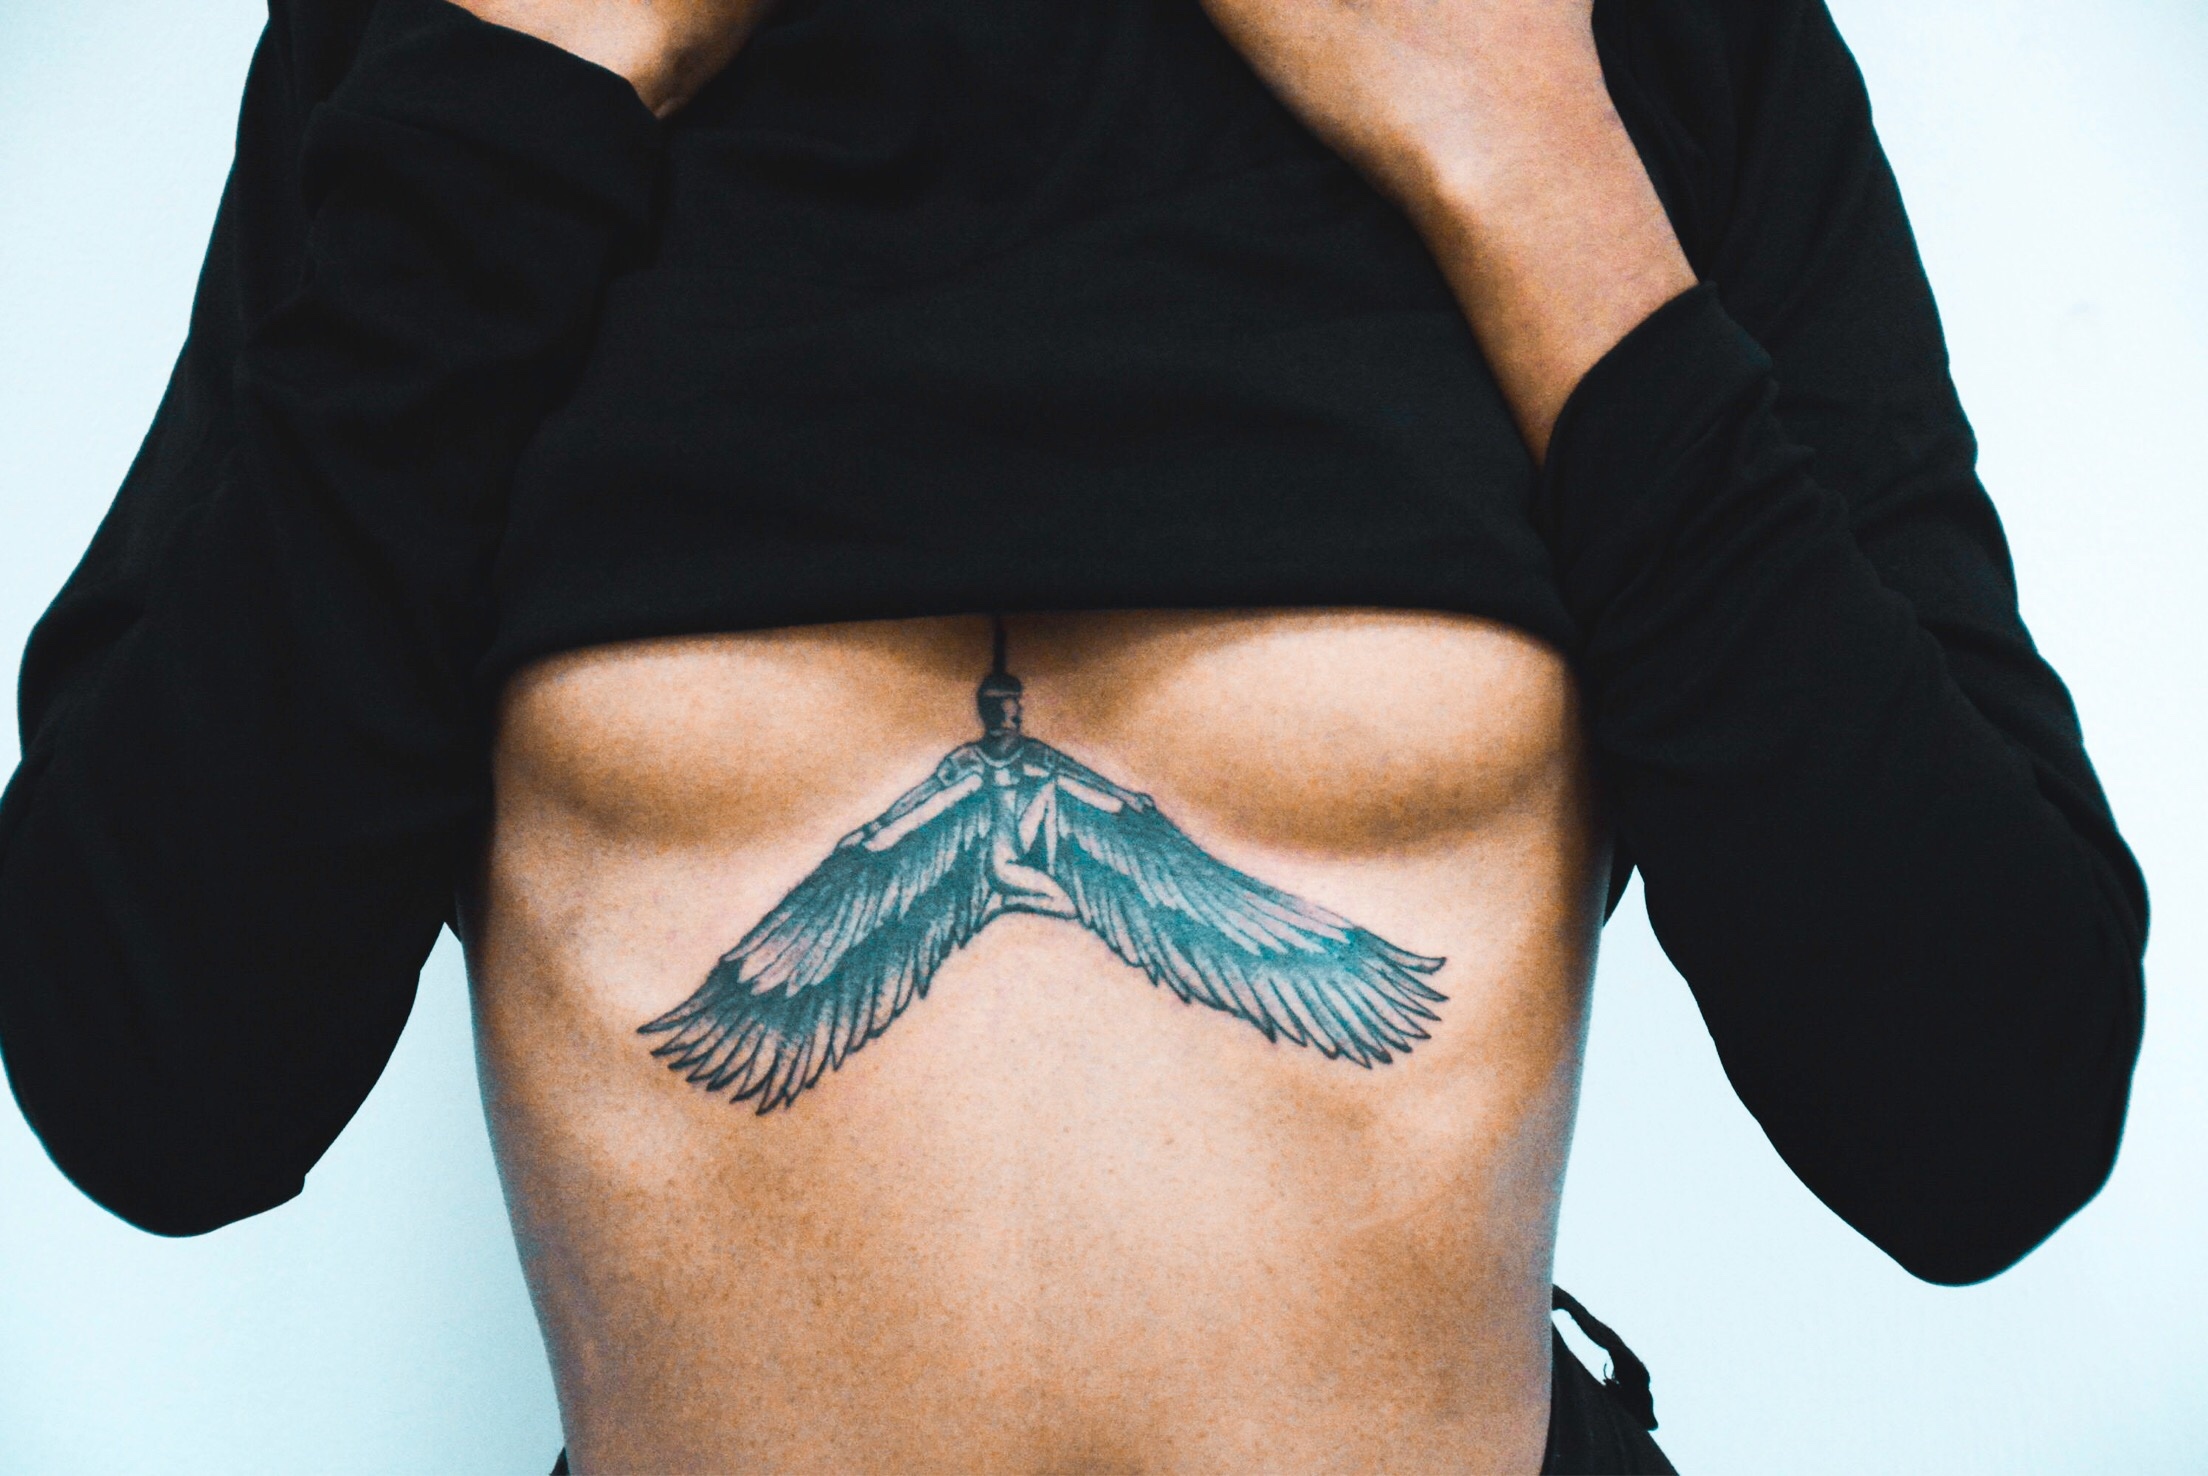 Underboob Tattoo: Good, Bad or Ugly?